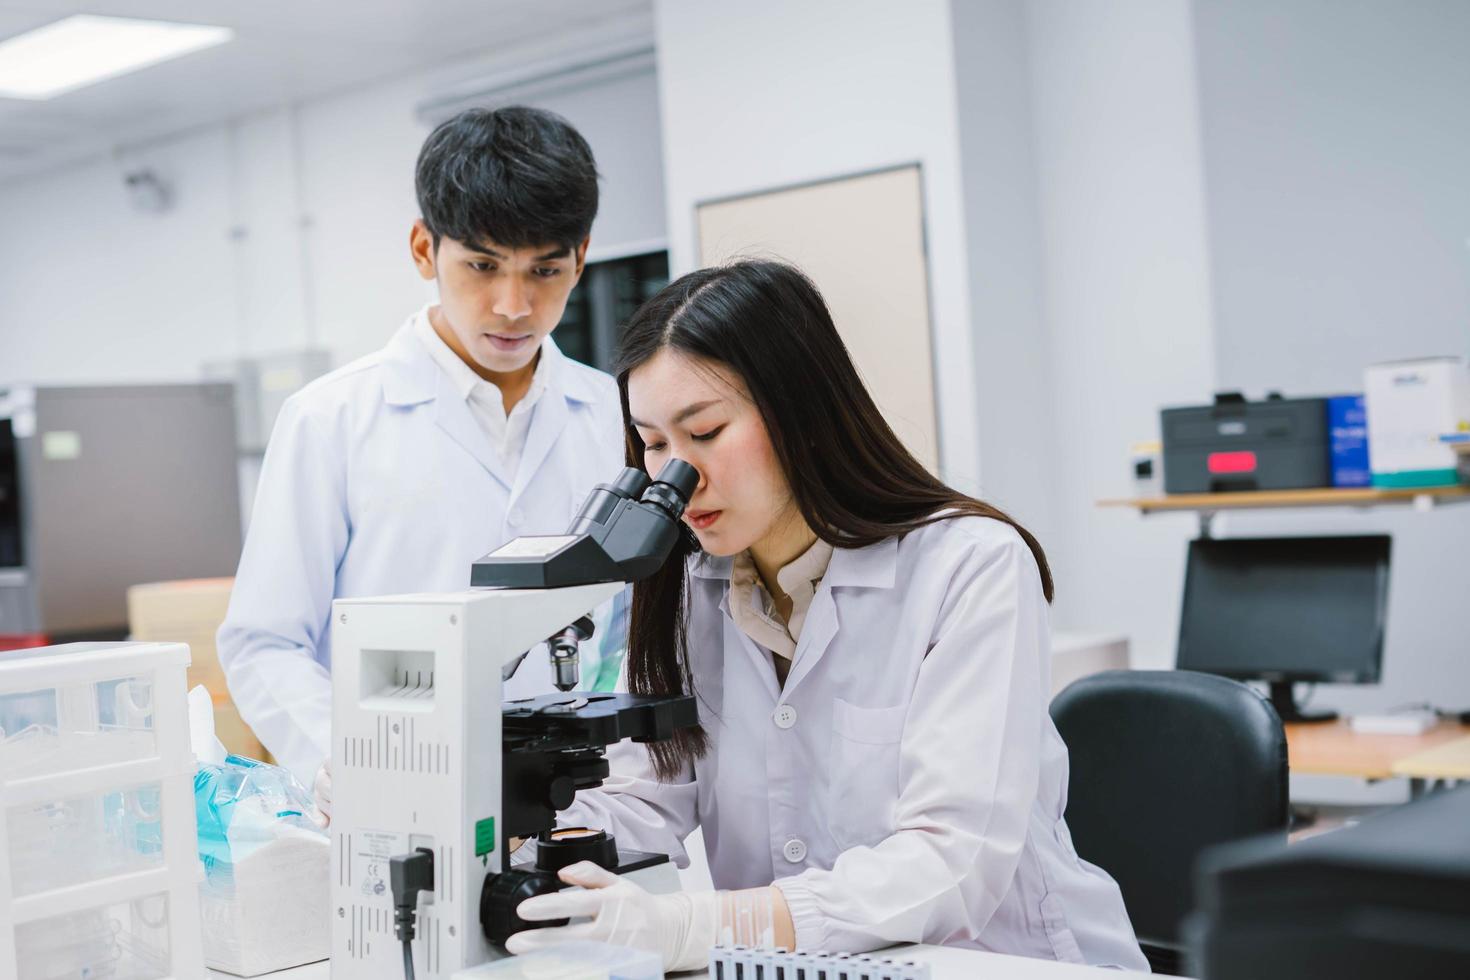 deux scientifiques médicaux travaillant dans un laboratoire médical, jeune femme scientifique regardant un microscope. sélectionner l'accent chez la jeune femme scientifique photo